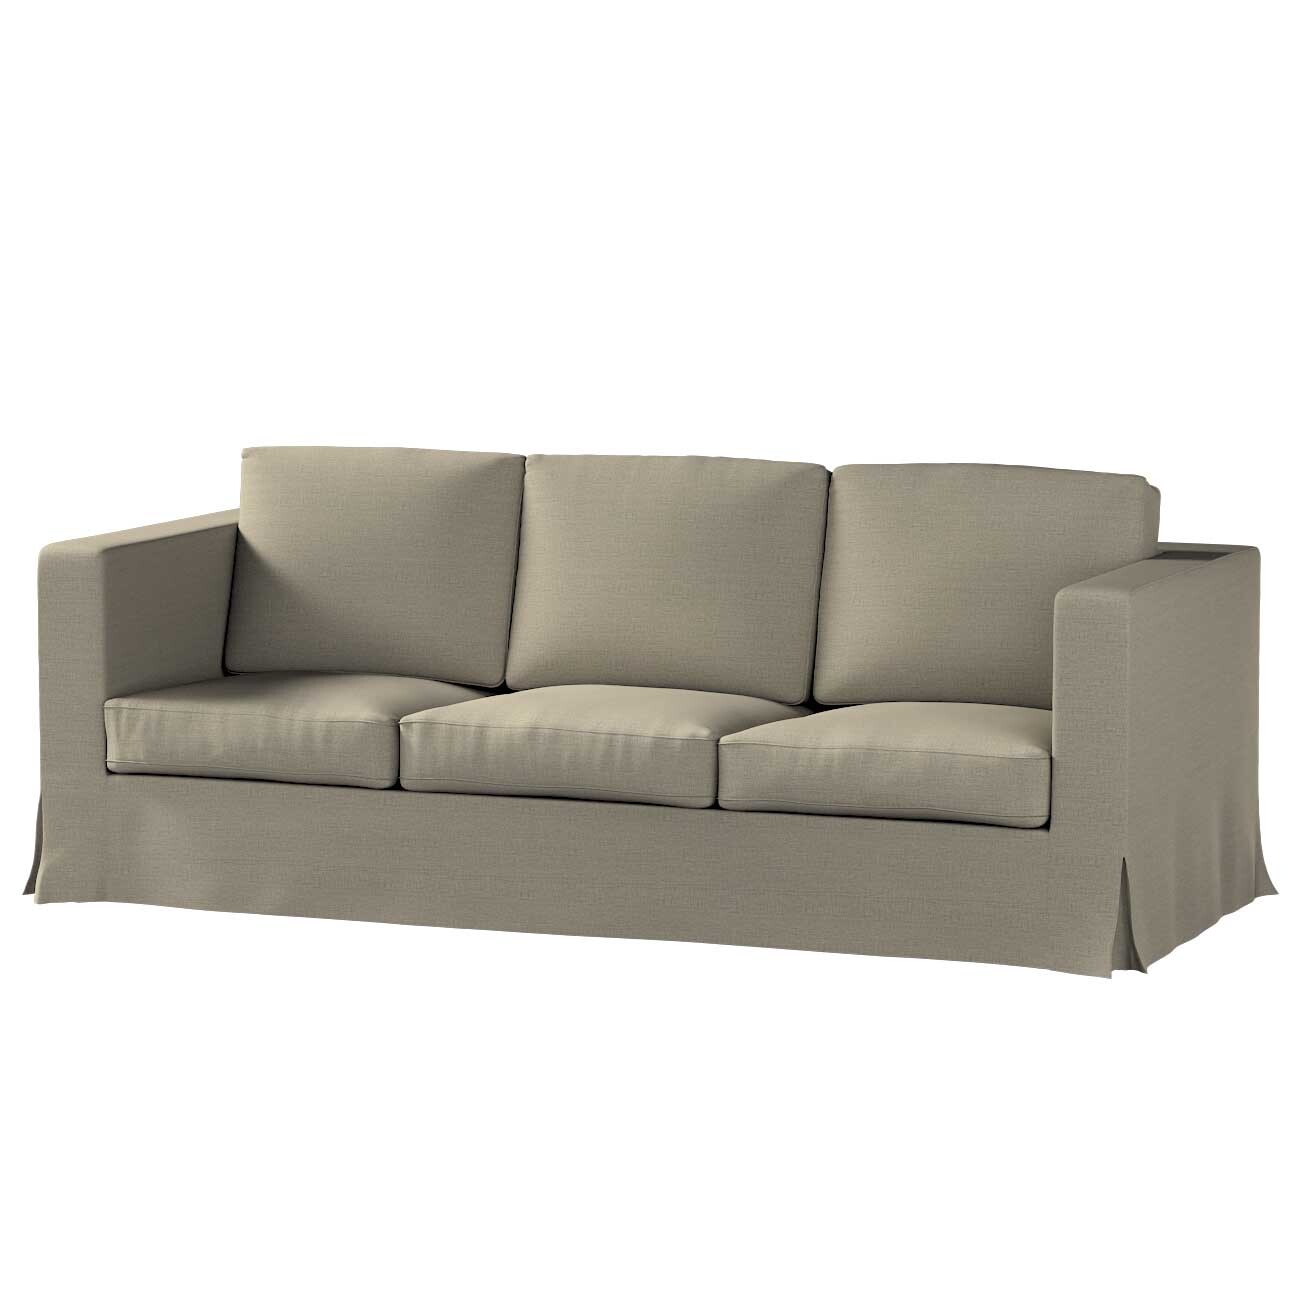 Bezug für Karlanda 3-Sitzer Sofa nicht ausklappbar, lang, beige-grau, Bezug günstig online kaufen